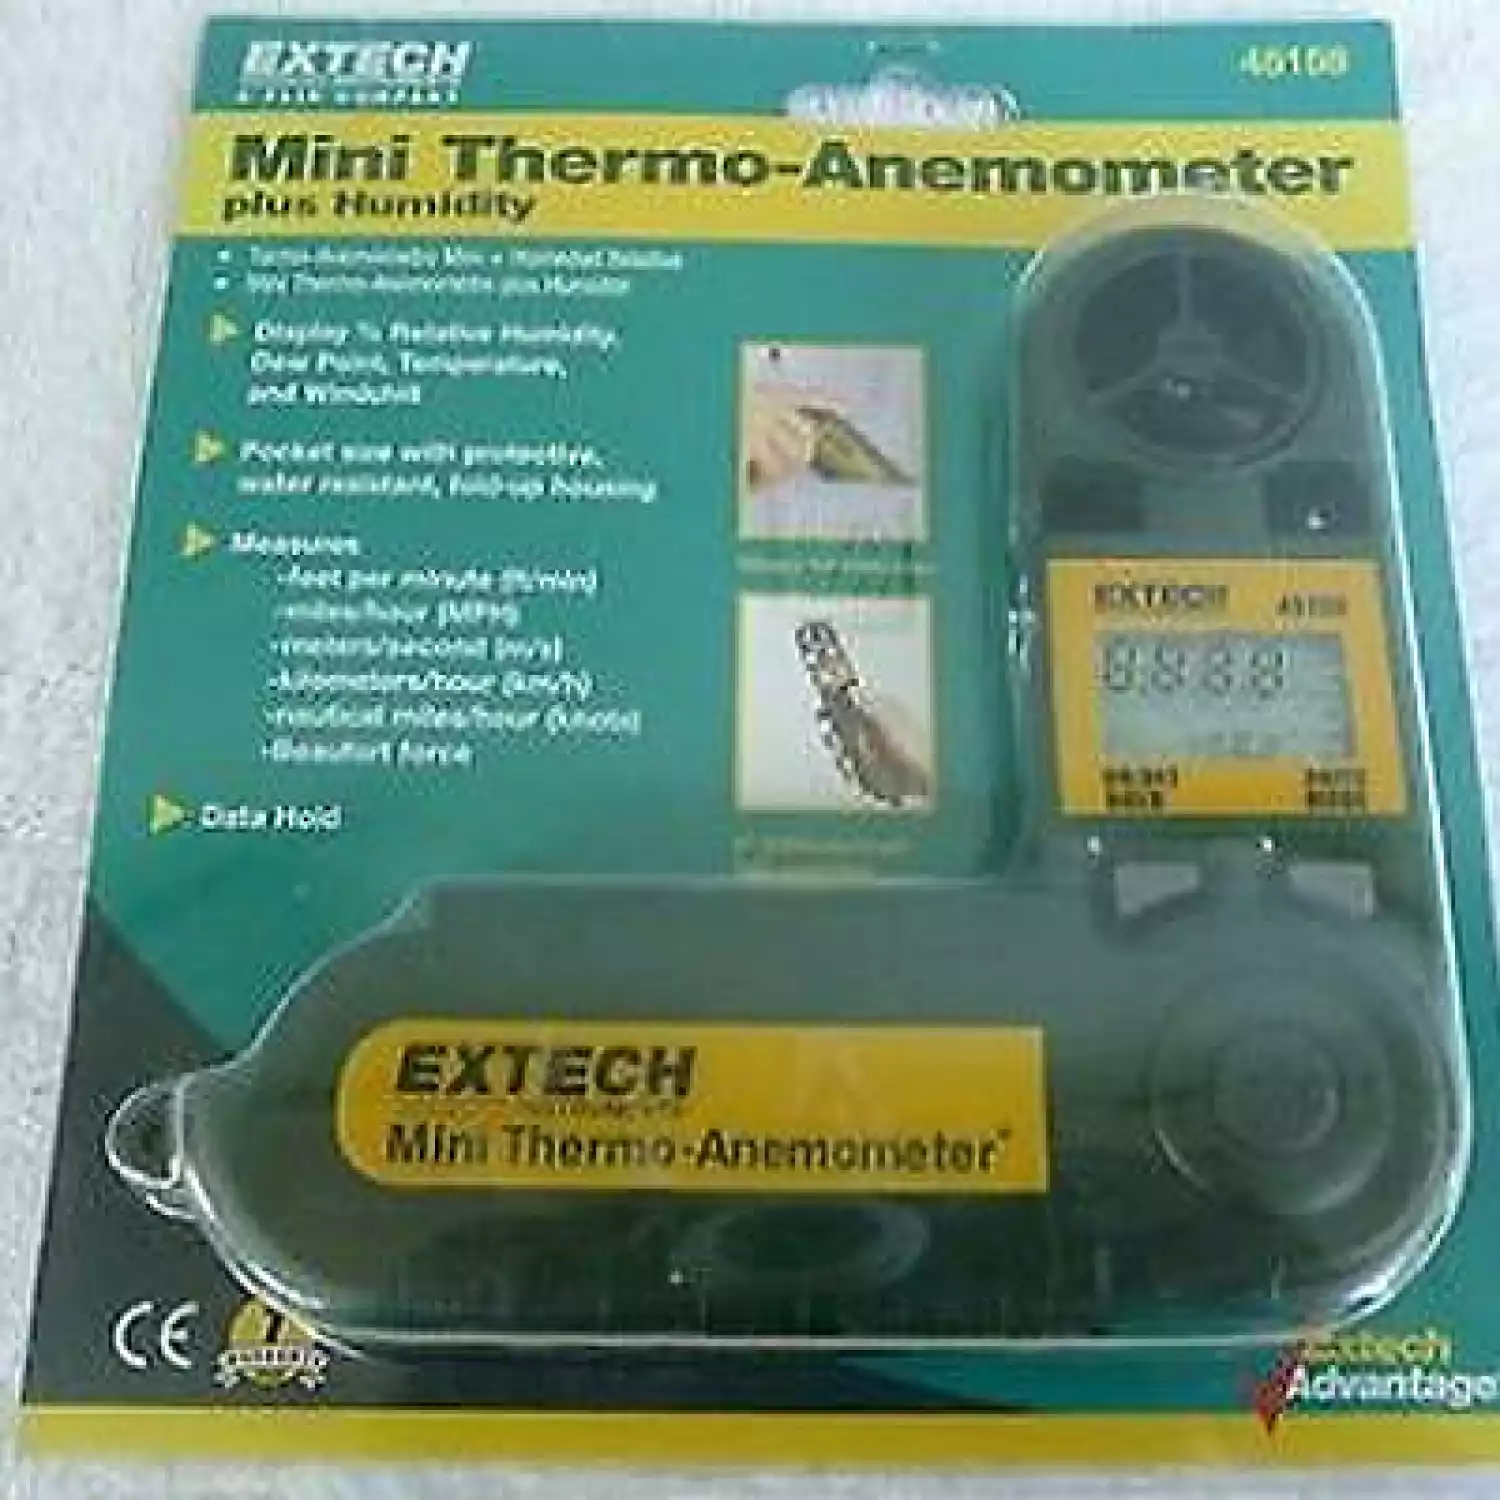 Мини термоанемометр Extech 45158 - 2